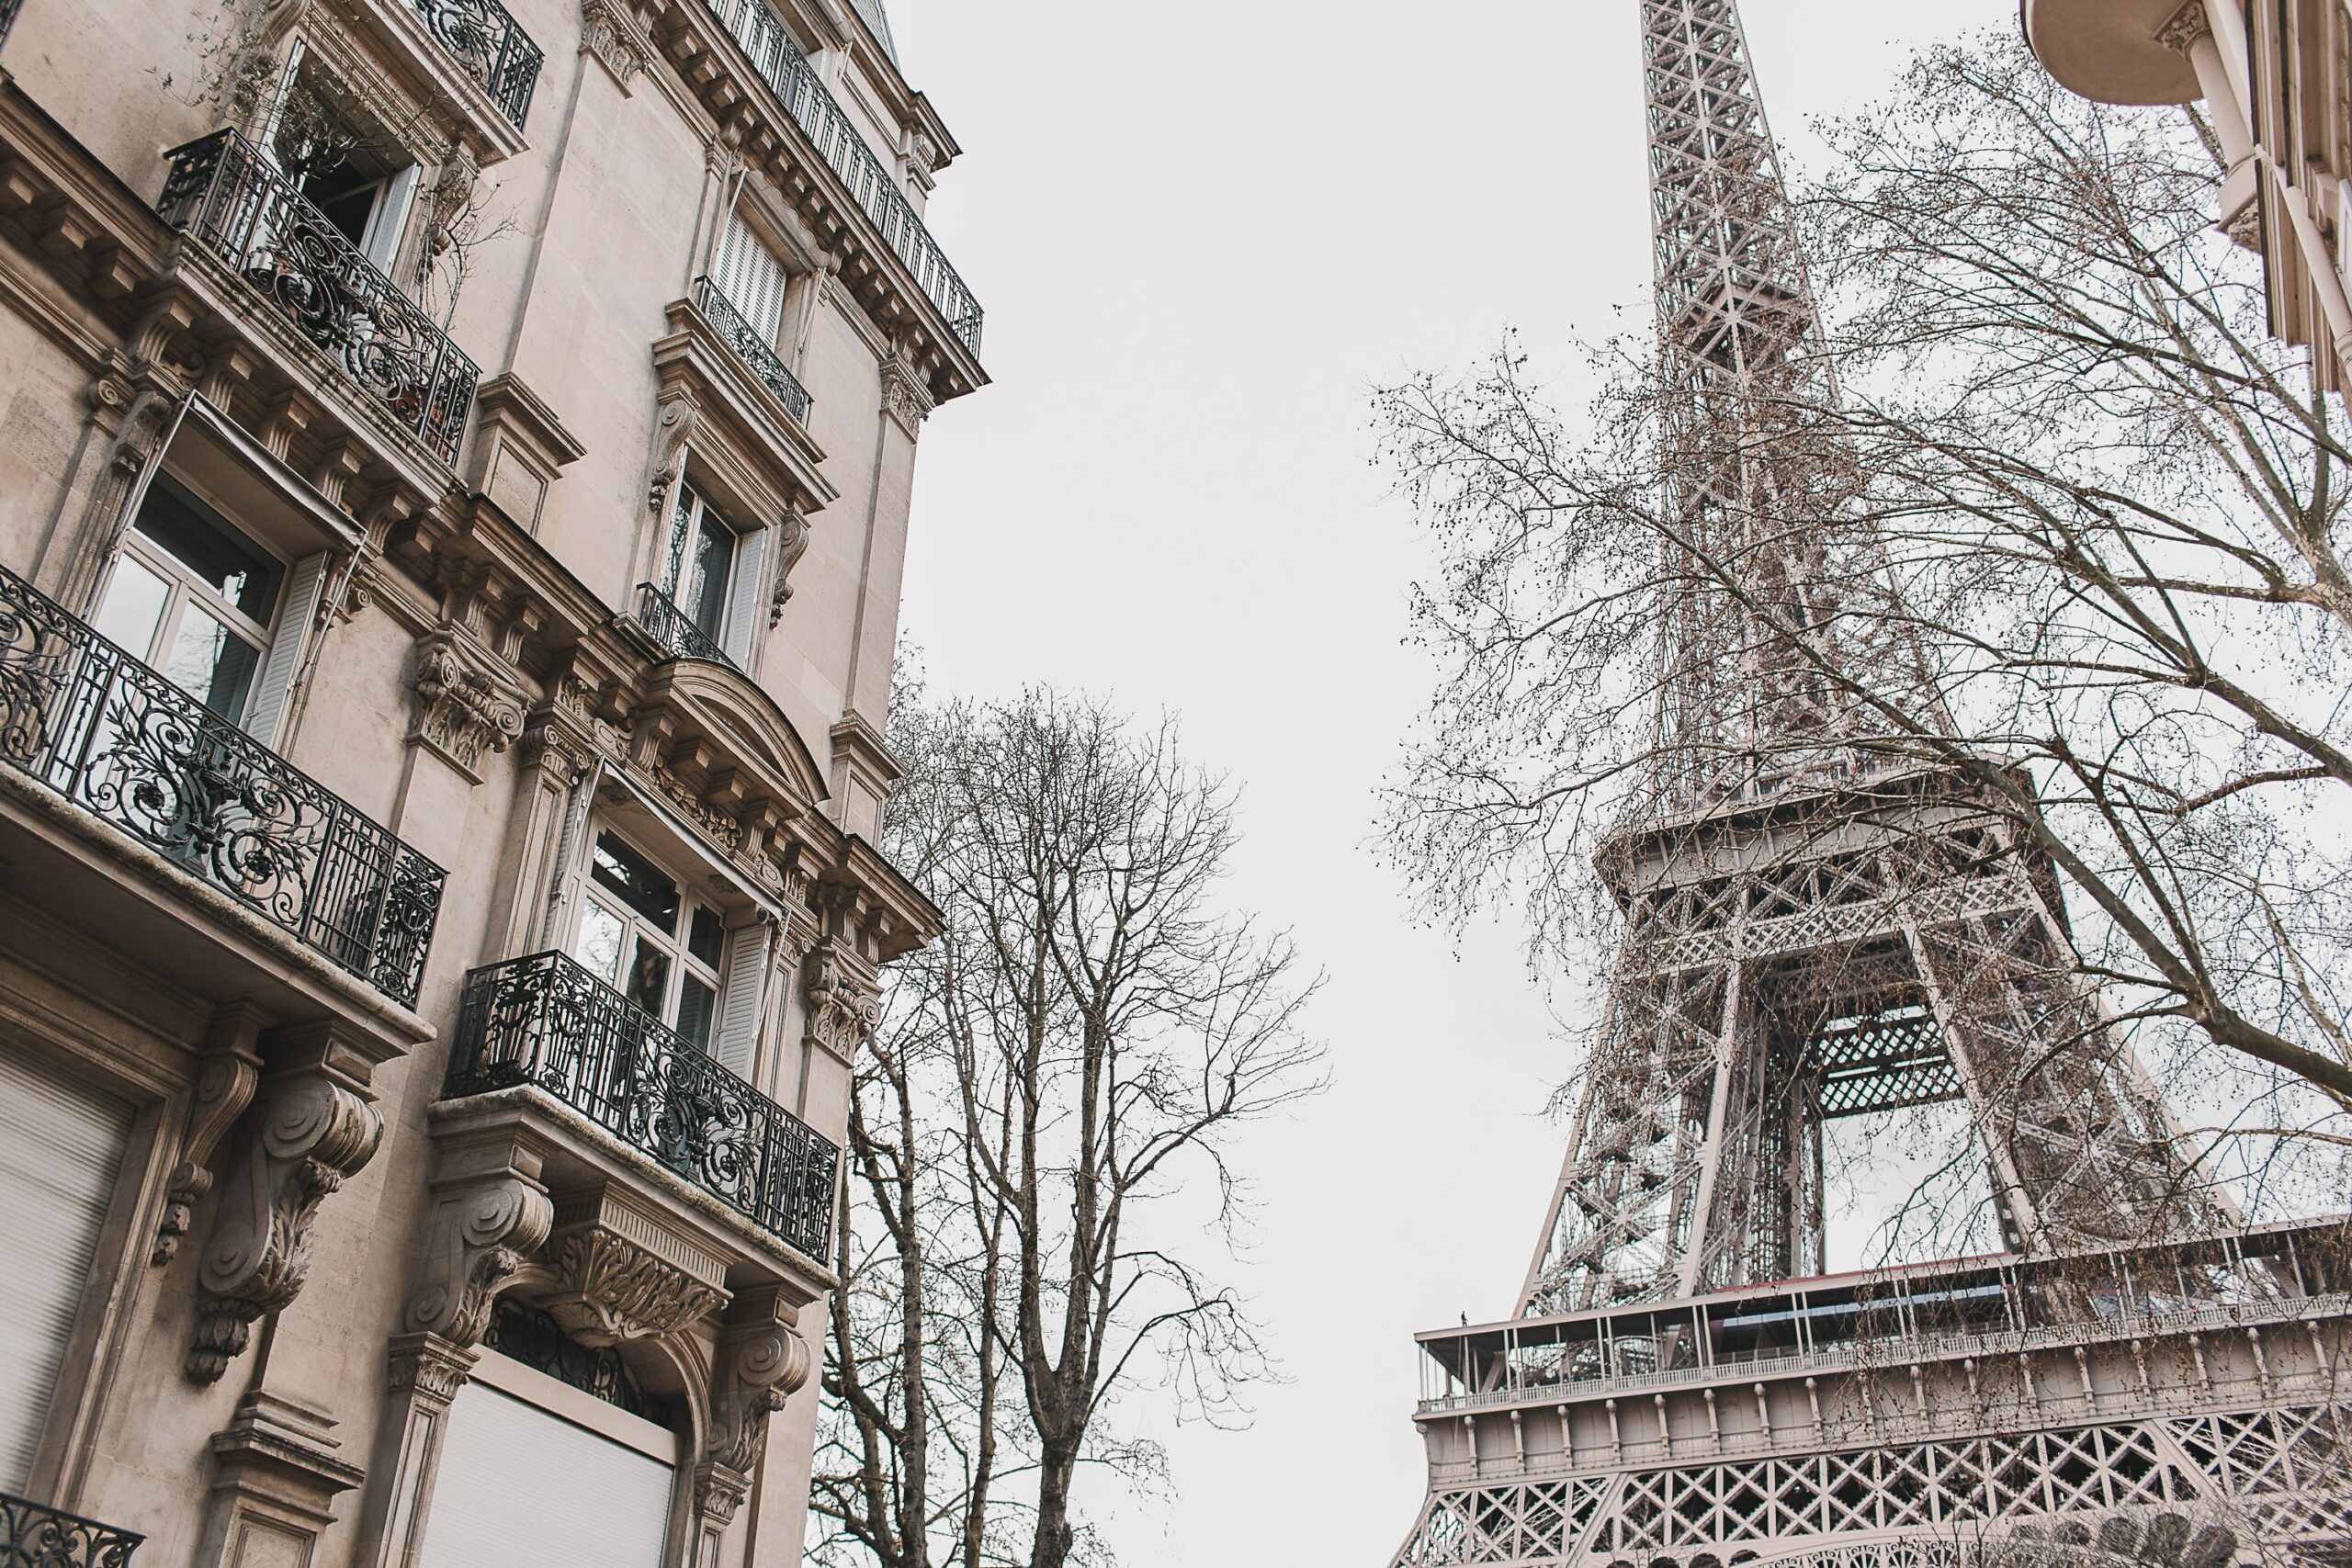 Torre Eiffel do lado de um prédio com arquitetura tradicional e antiga